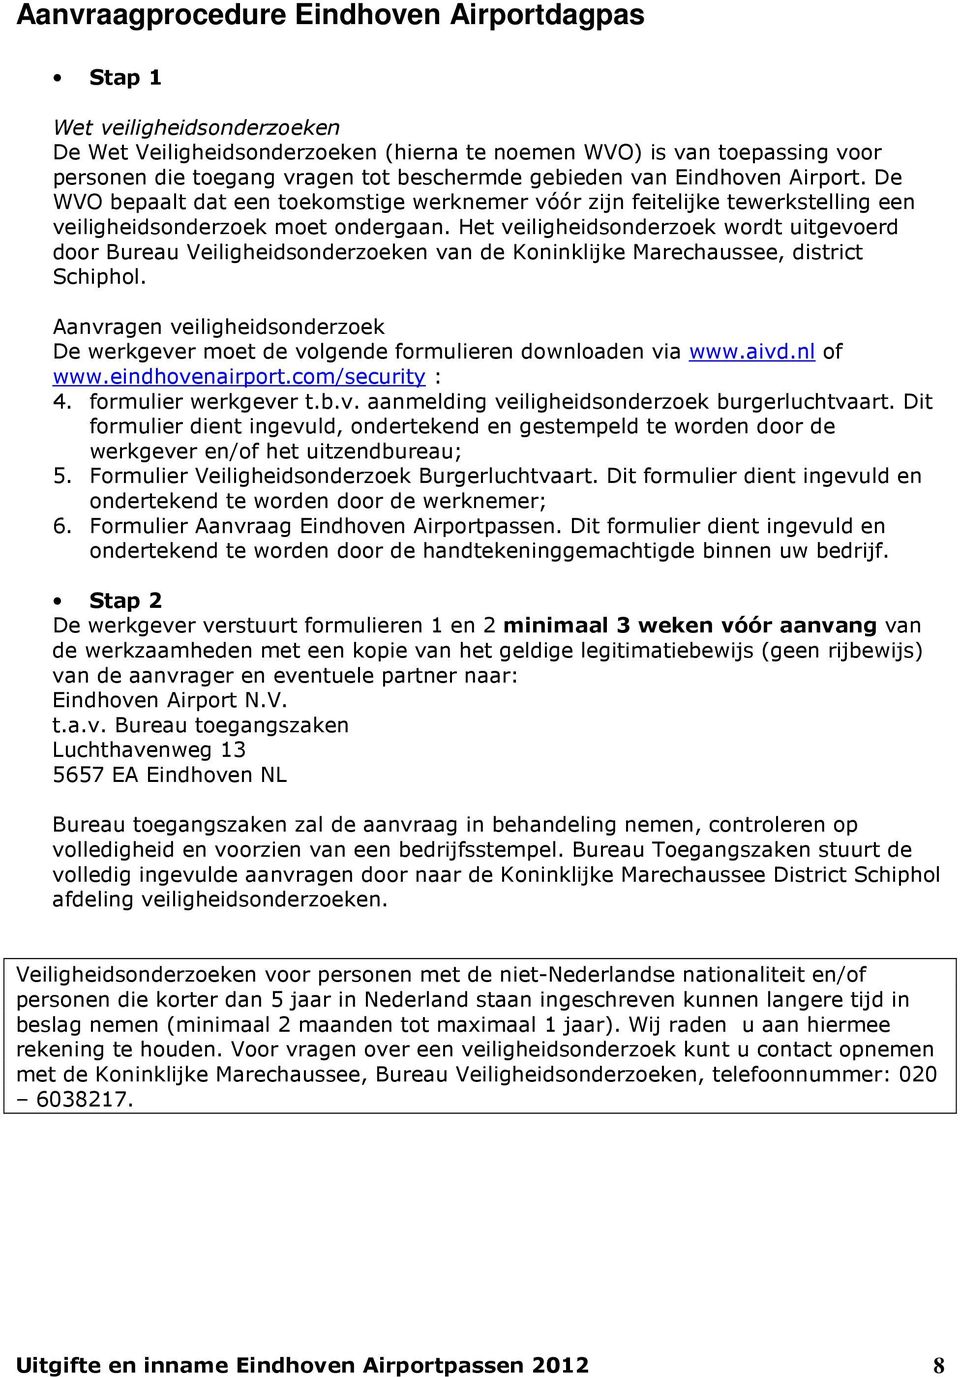 Het veiligheidsonderzoek wordt uitgevoerd door Bureau Veiligheidsonderzoeken van de Koninklijke Marechaussee, district Schiphol.